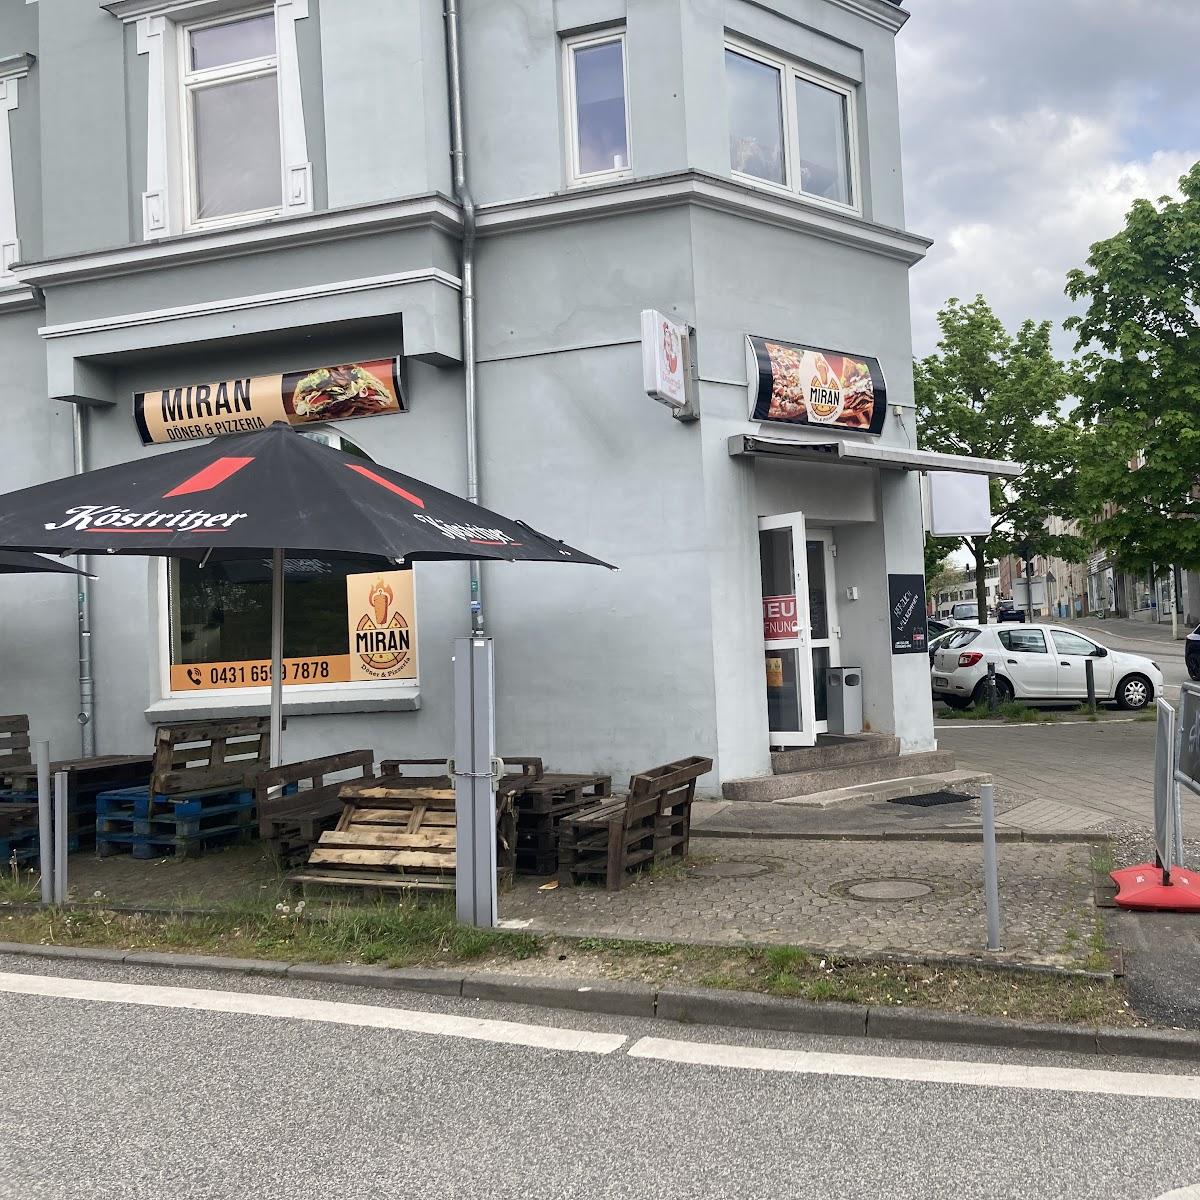 Restaurant "Miran Döner & Pizzeria" in Kiel